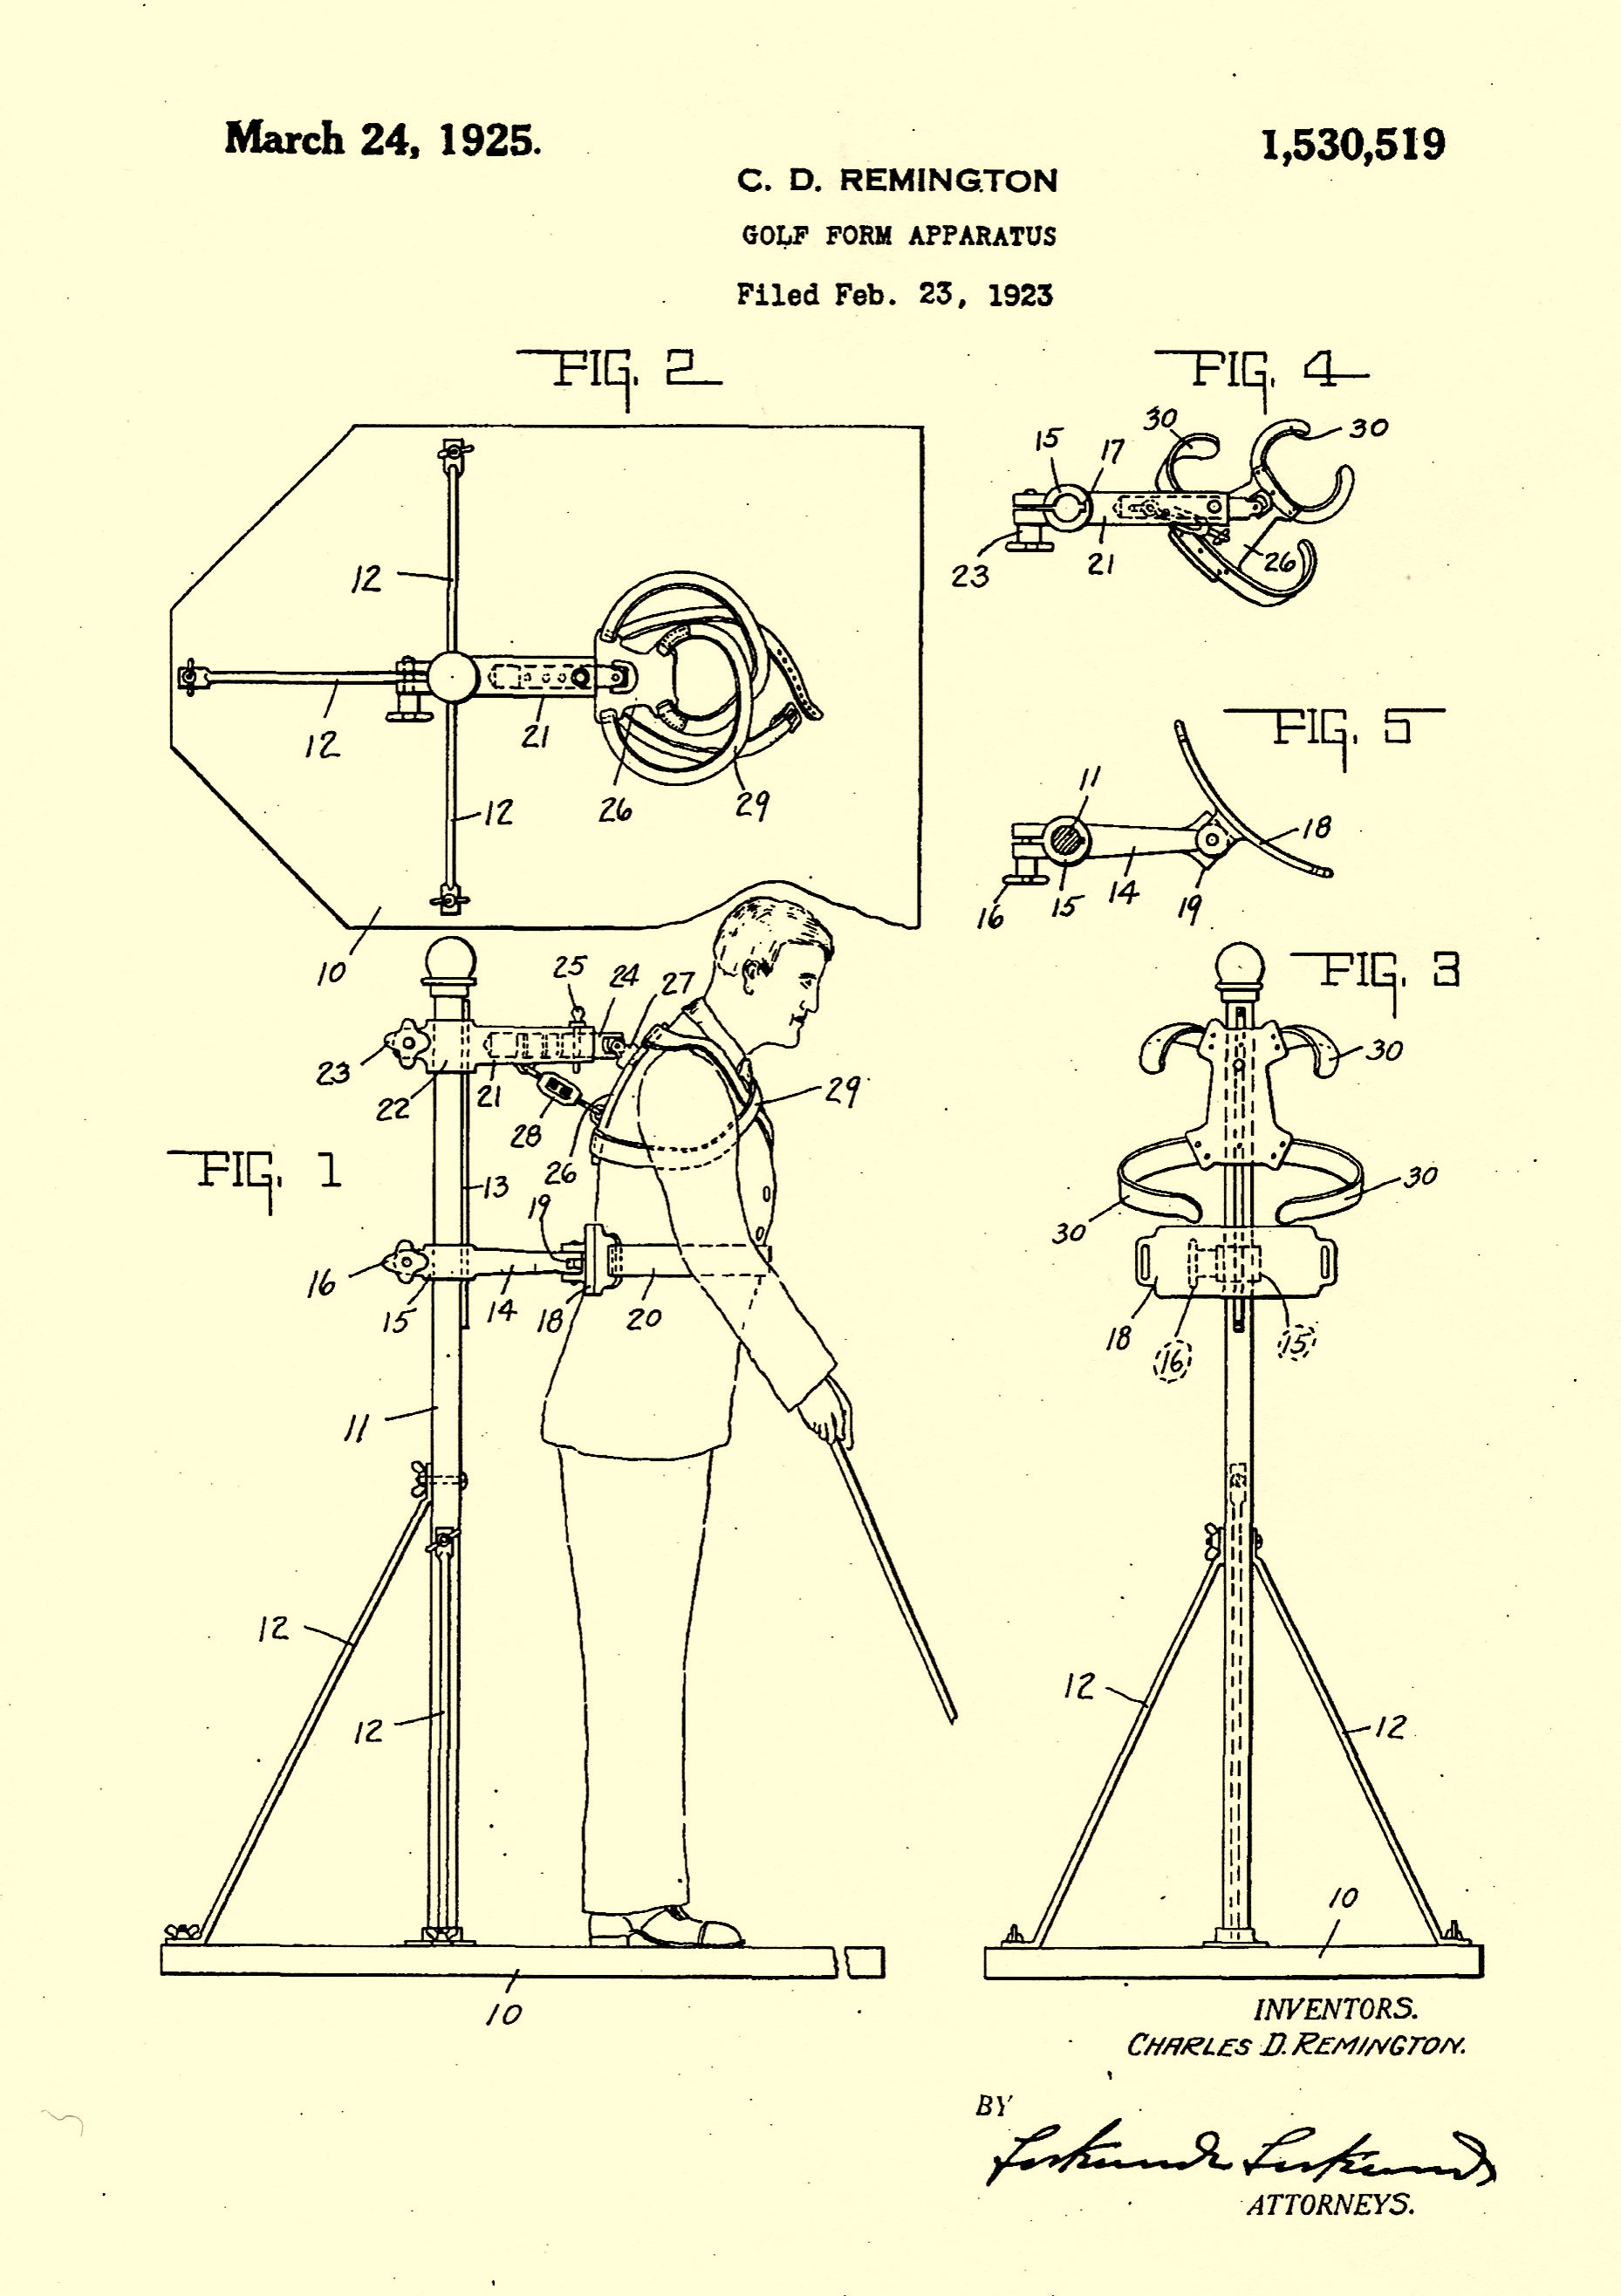 A copy of C. D. REMINGTON'S GOLF FORM APPARATUS Patent.